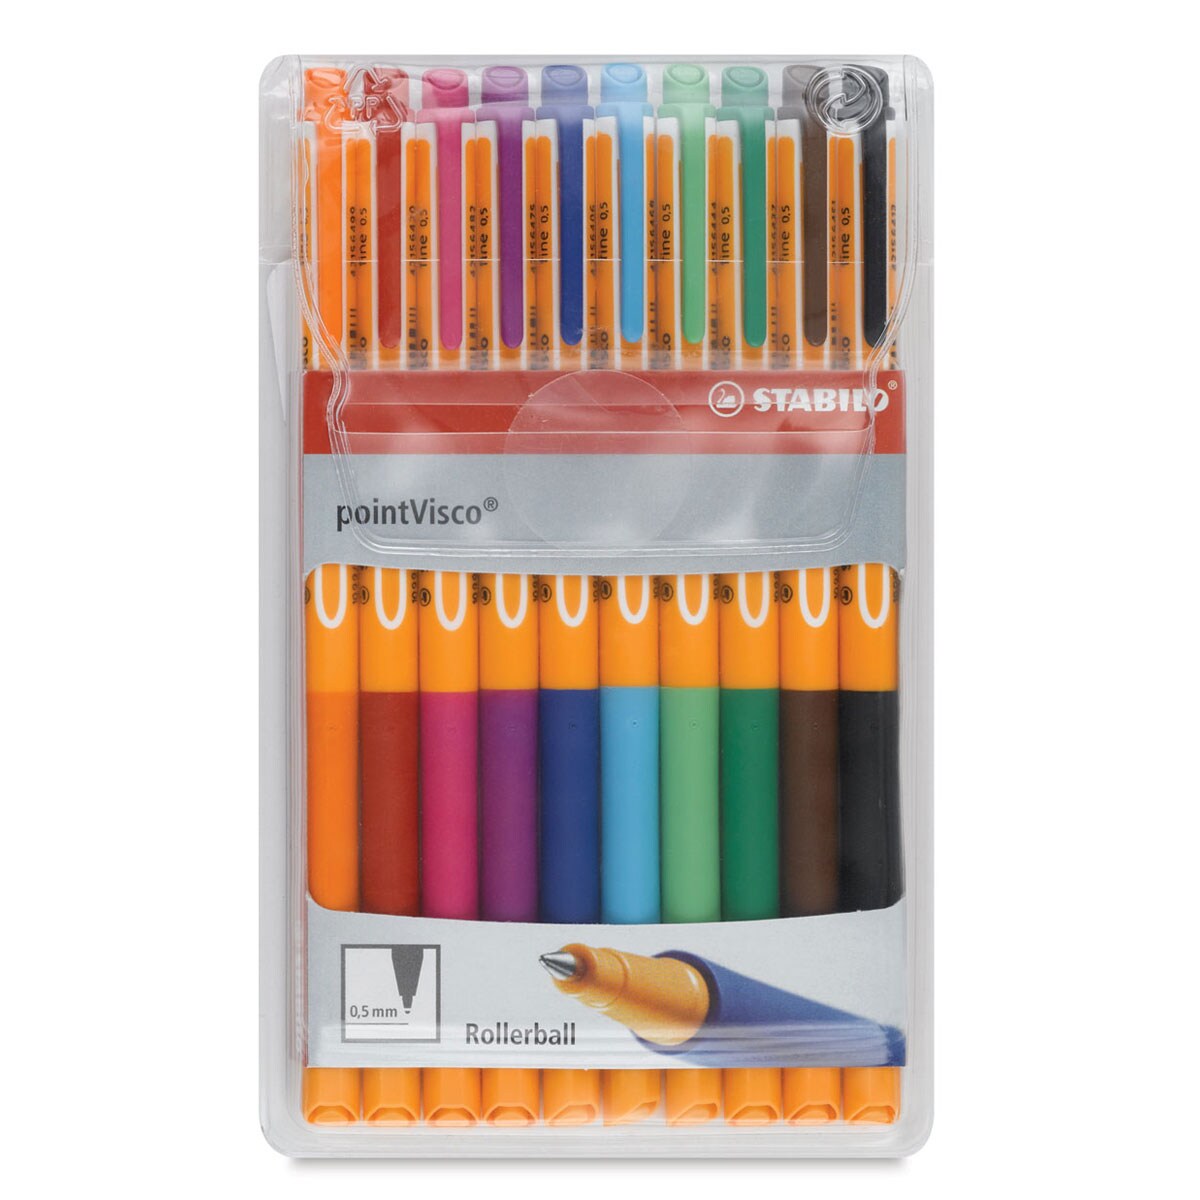 All STABILO gel pens